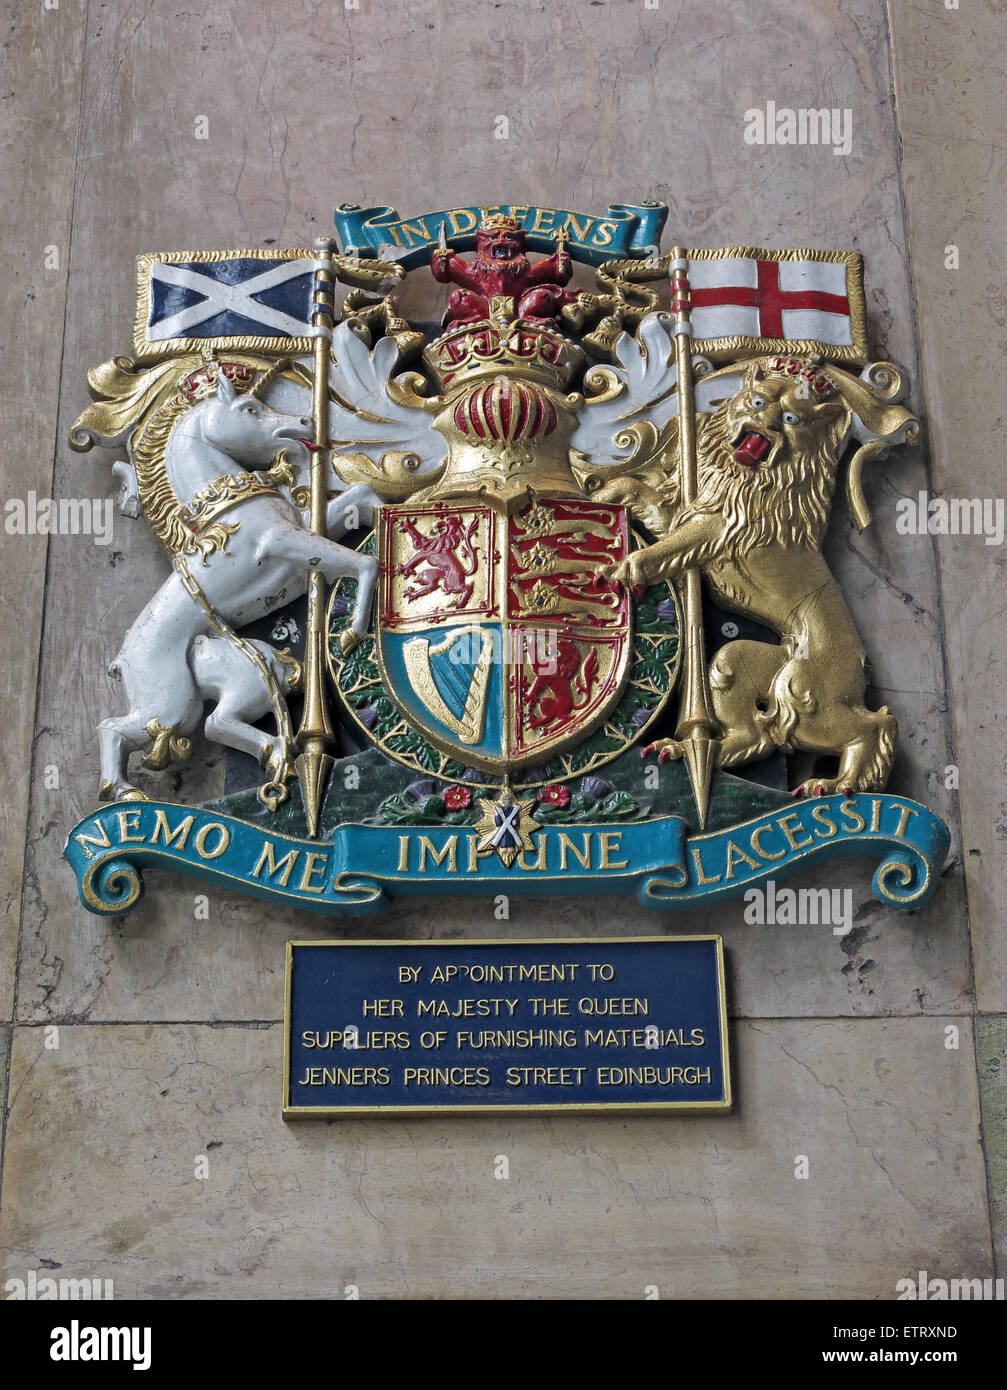 Magasin Jenners Princes St Edinburgh Scotland UK - Crest par nomination royale Banque D'Images